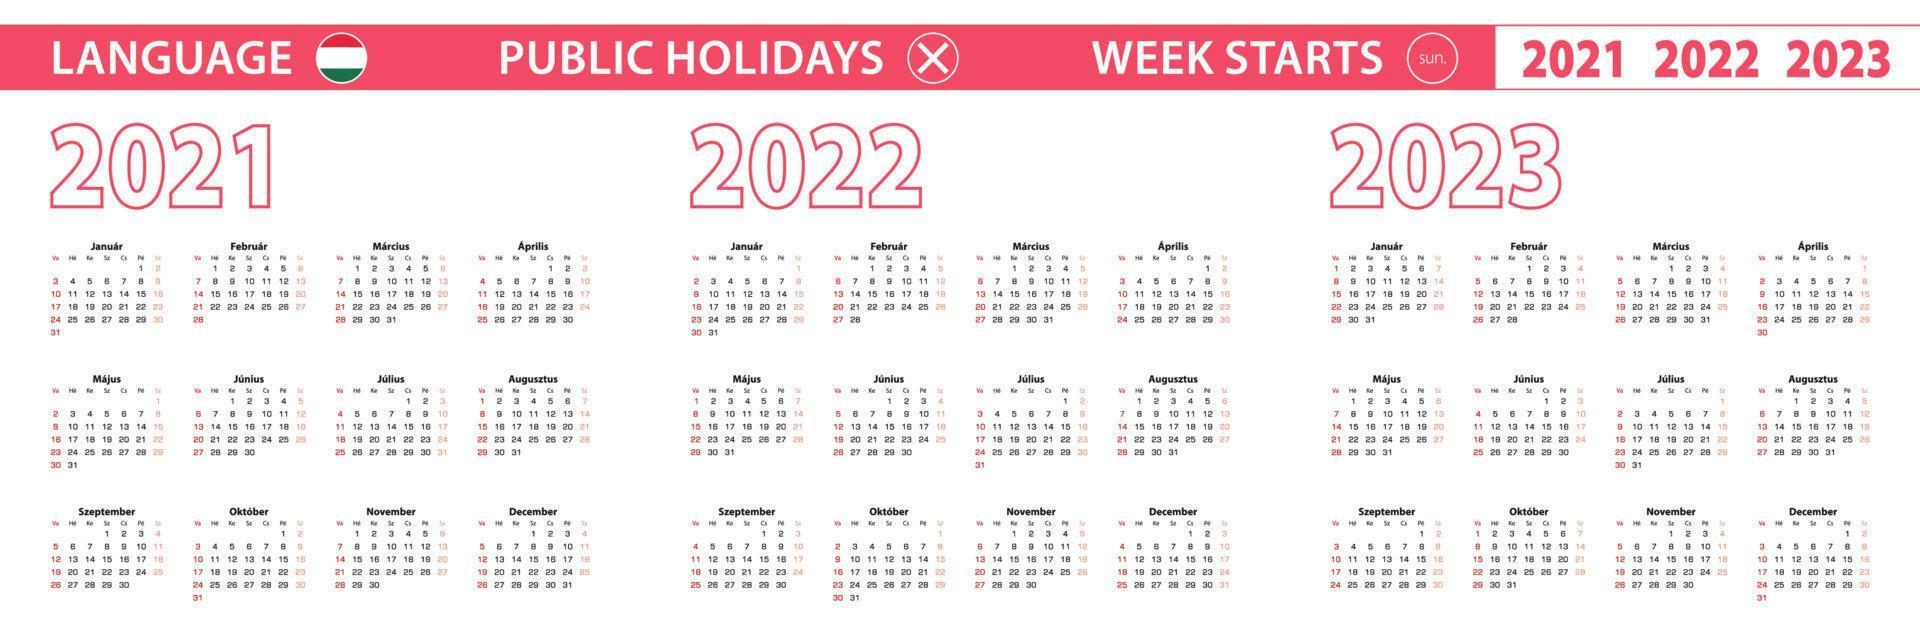 Calendario vettoriale anno 2021, 2022, 2023 in lingua ungherese, la settimana inizia domenica.